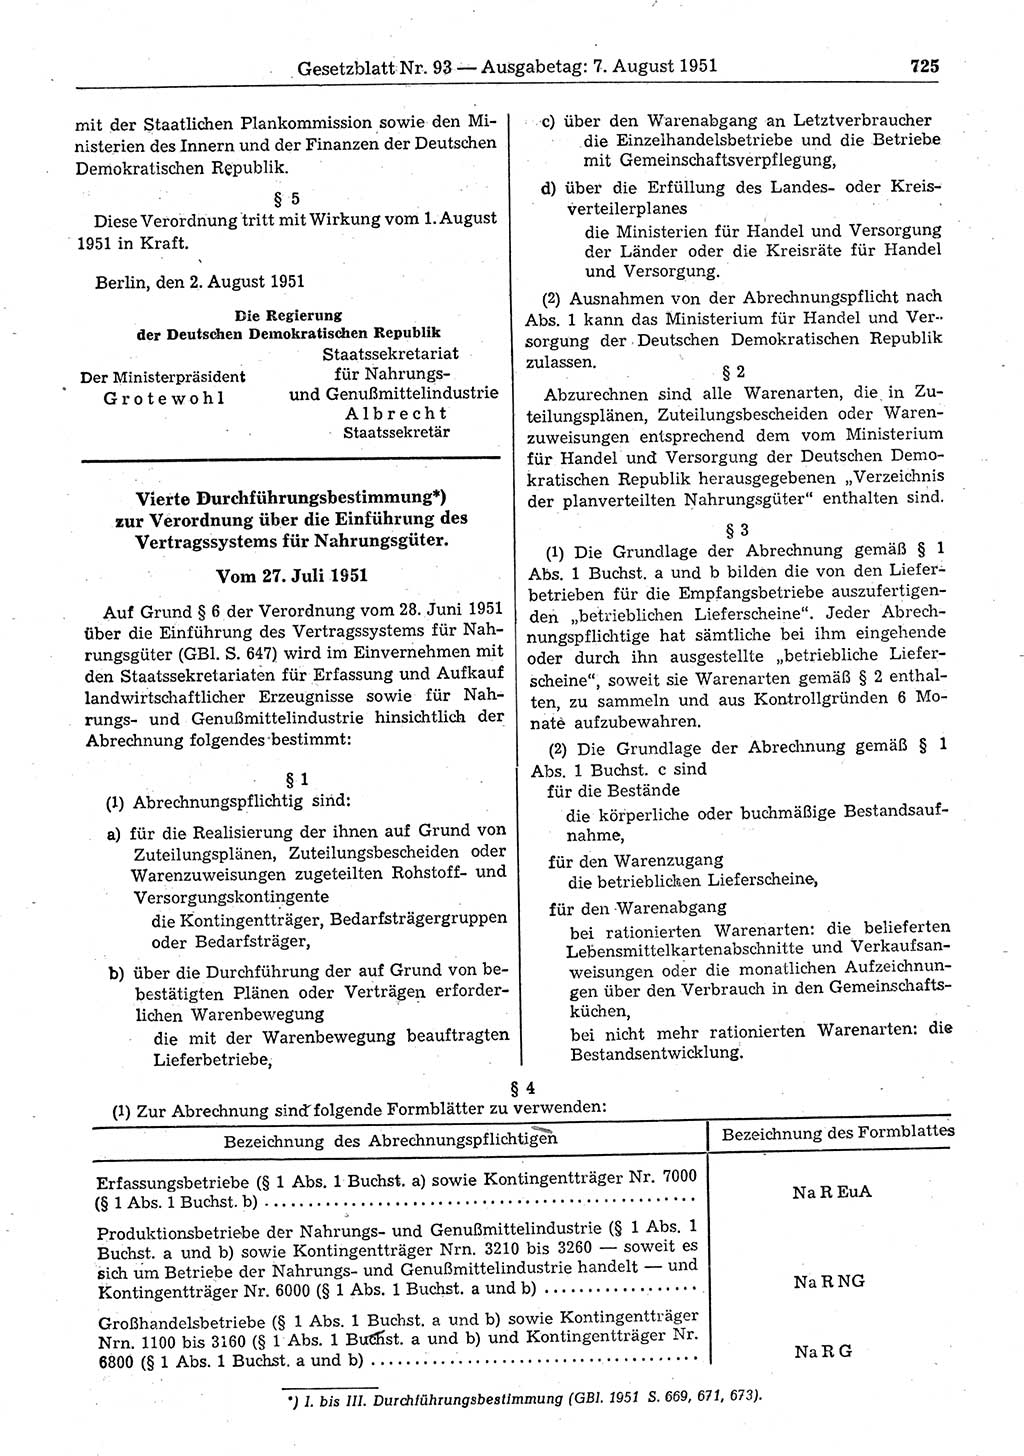 Gesetzblatt (GBl.) der Deutschen Demokratischen Republik (DDR) 1951, Seite 725 (GBl. DDR 1951, S. 725)